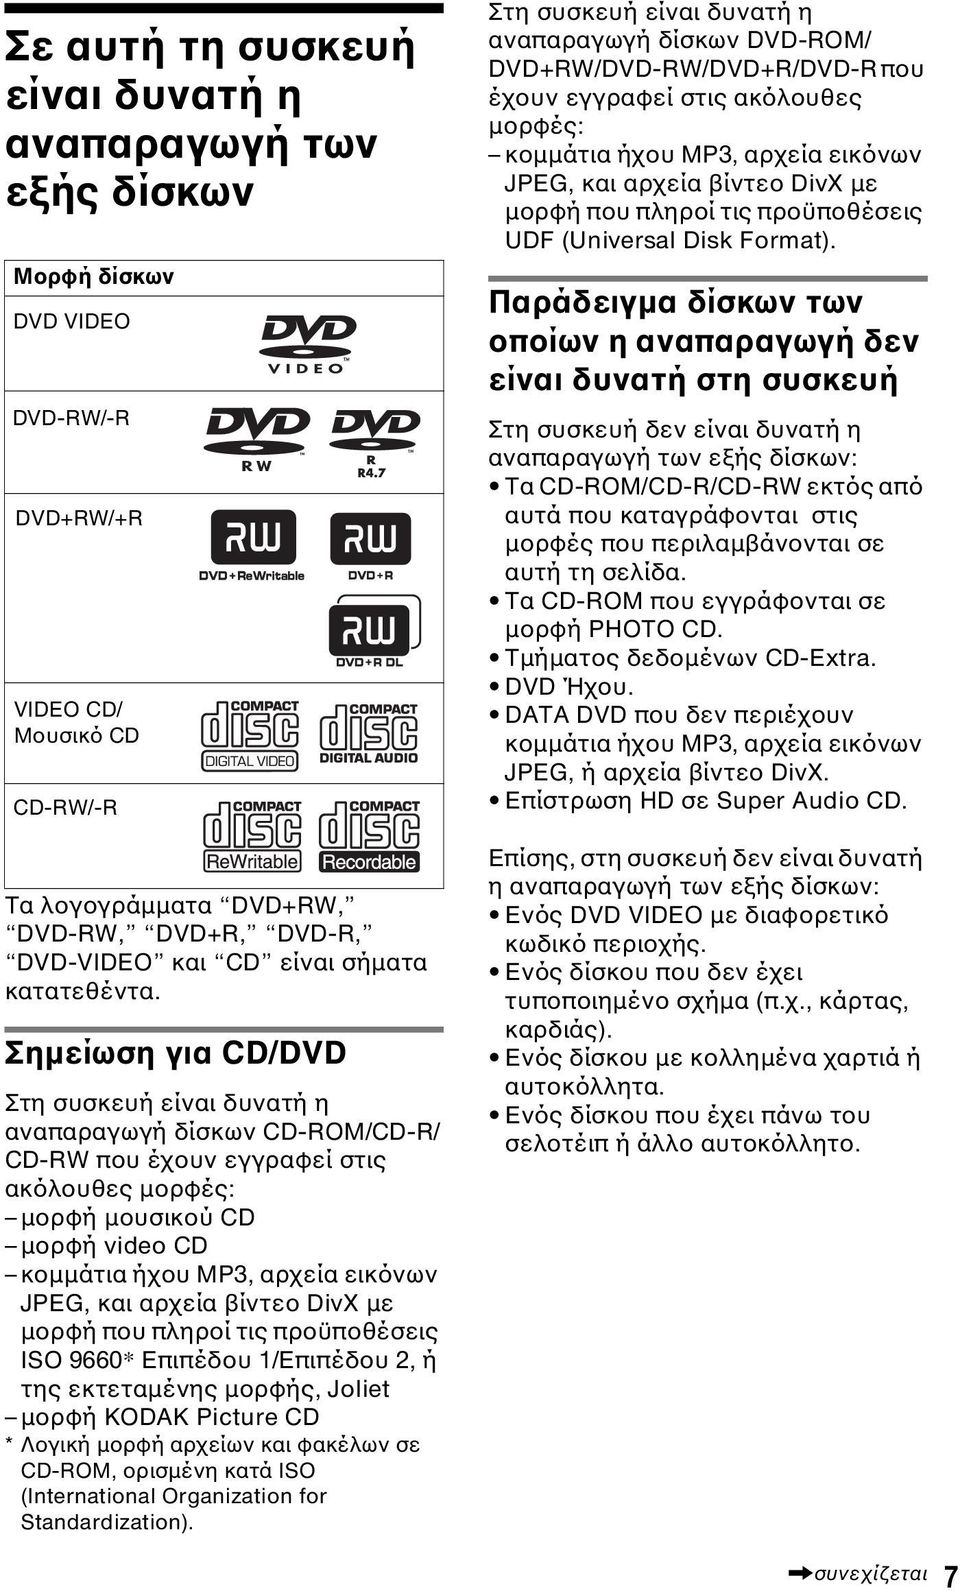 Σηµείωση για CD/DVD Στη συσκευή είναι δυνατή η αναπαραγωγή δίσκων CD-ROM/CD-R/ CD-RW που έχουν εγγραφεί στις ακόλουθες µορφές: µορφή µουσικού CD µορφή video CD κοµµάτια ήχου MP3, αρχεία εικόνων JPEG,